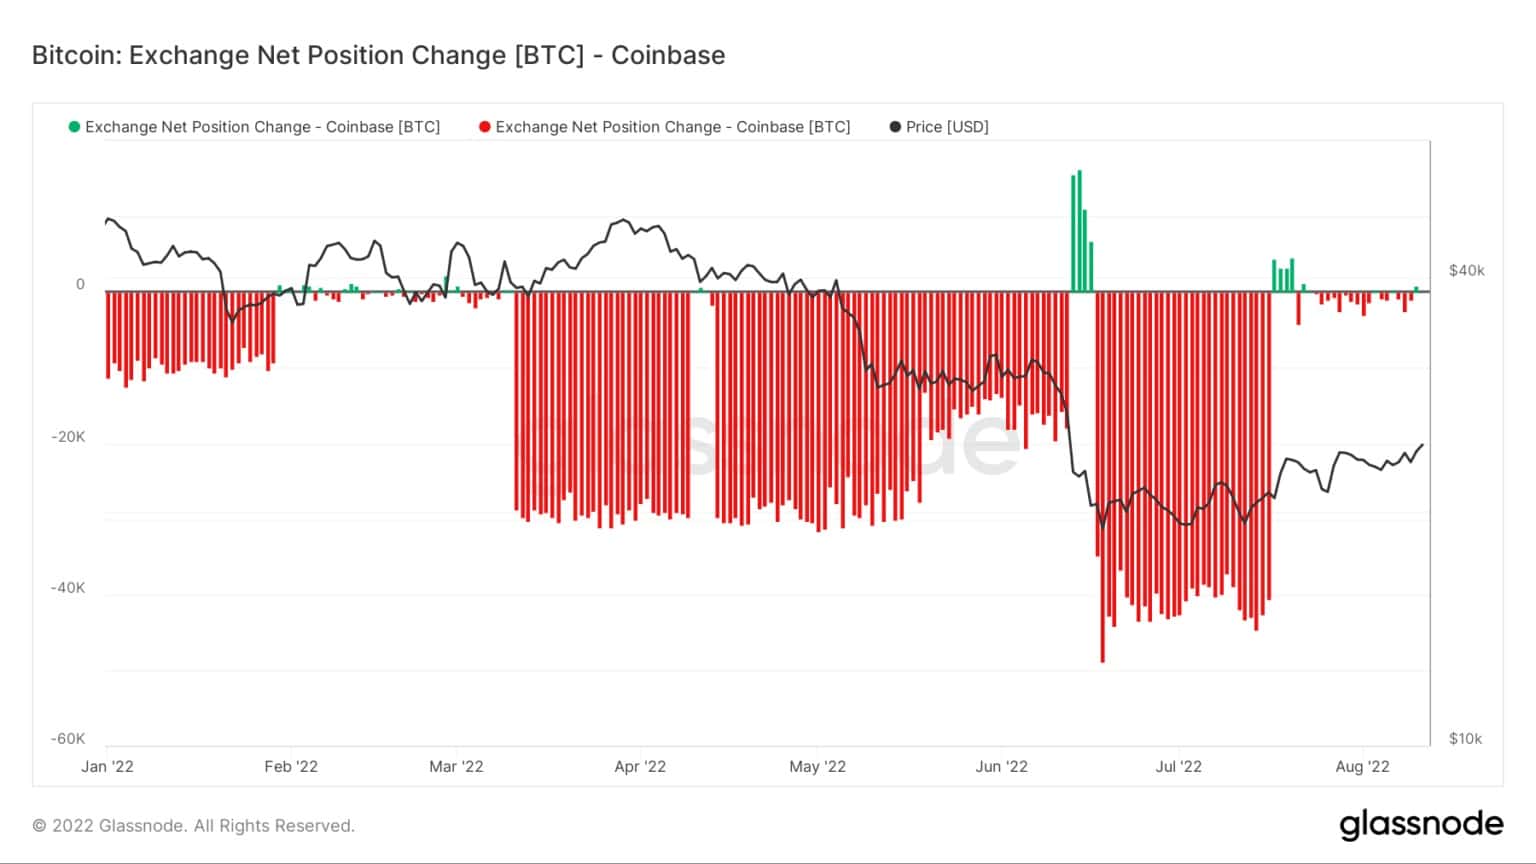 Cambio de posición neta en el intercambio de Bitcoin (Fuente: Glassnode)